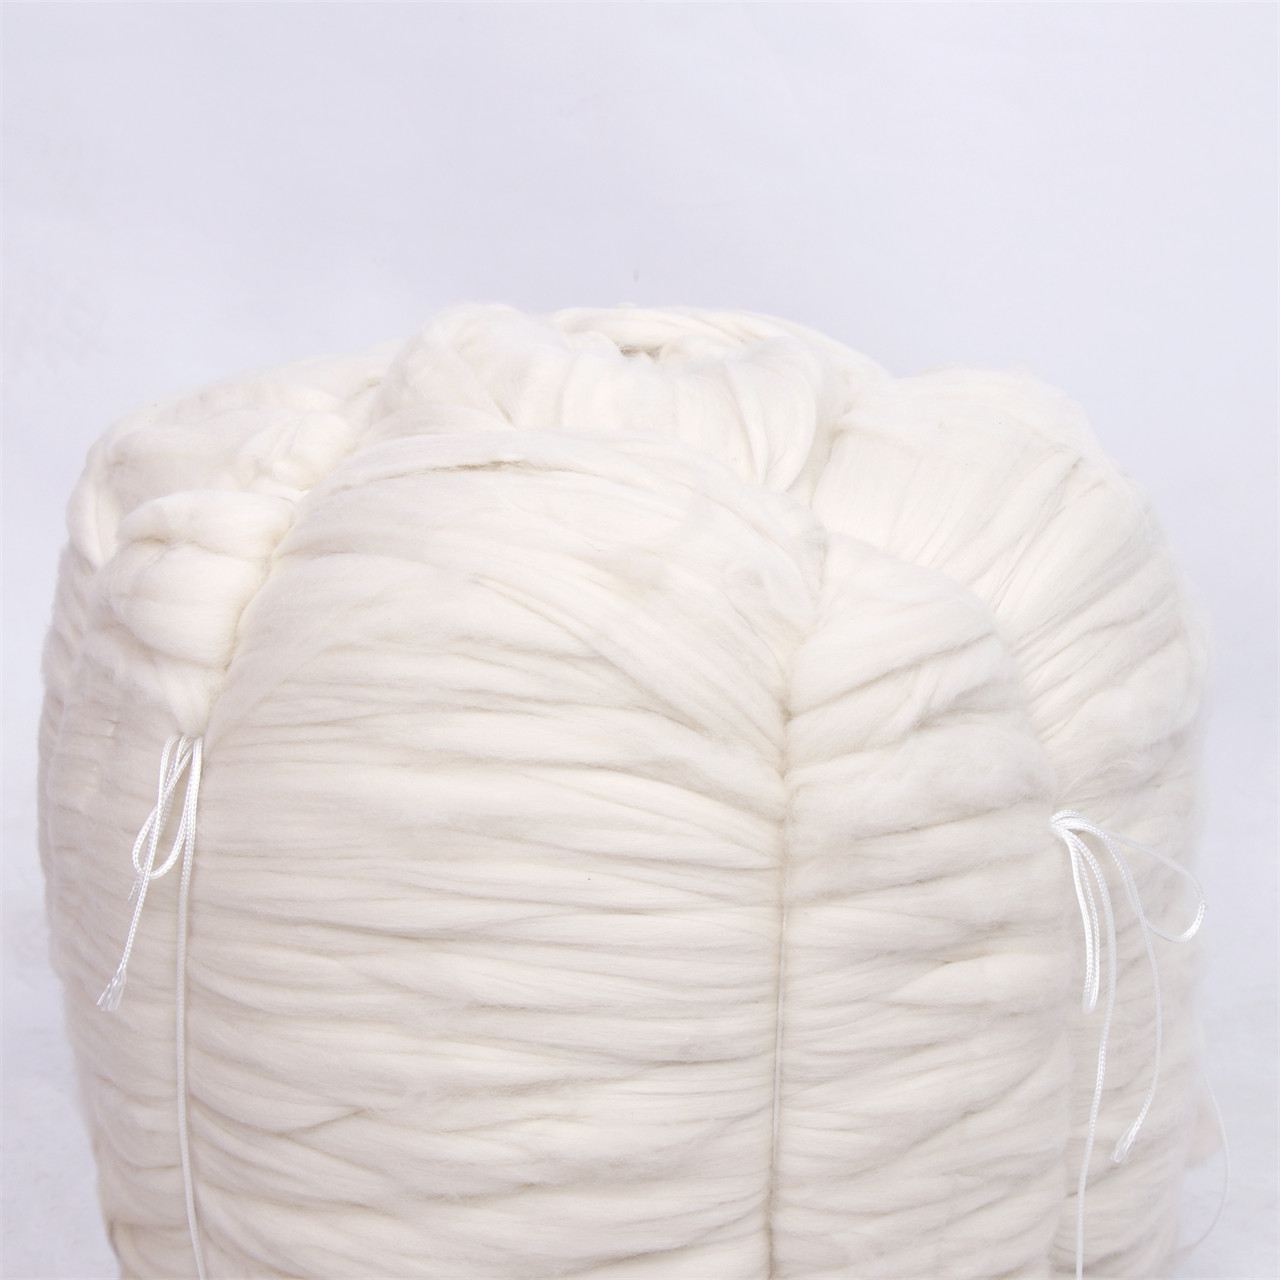 super fine pure cashmere tops white